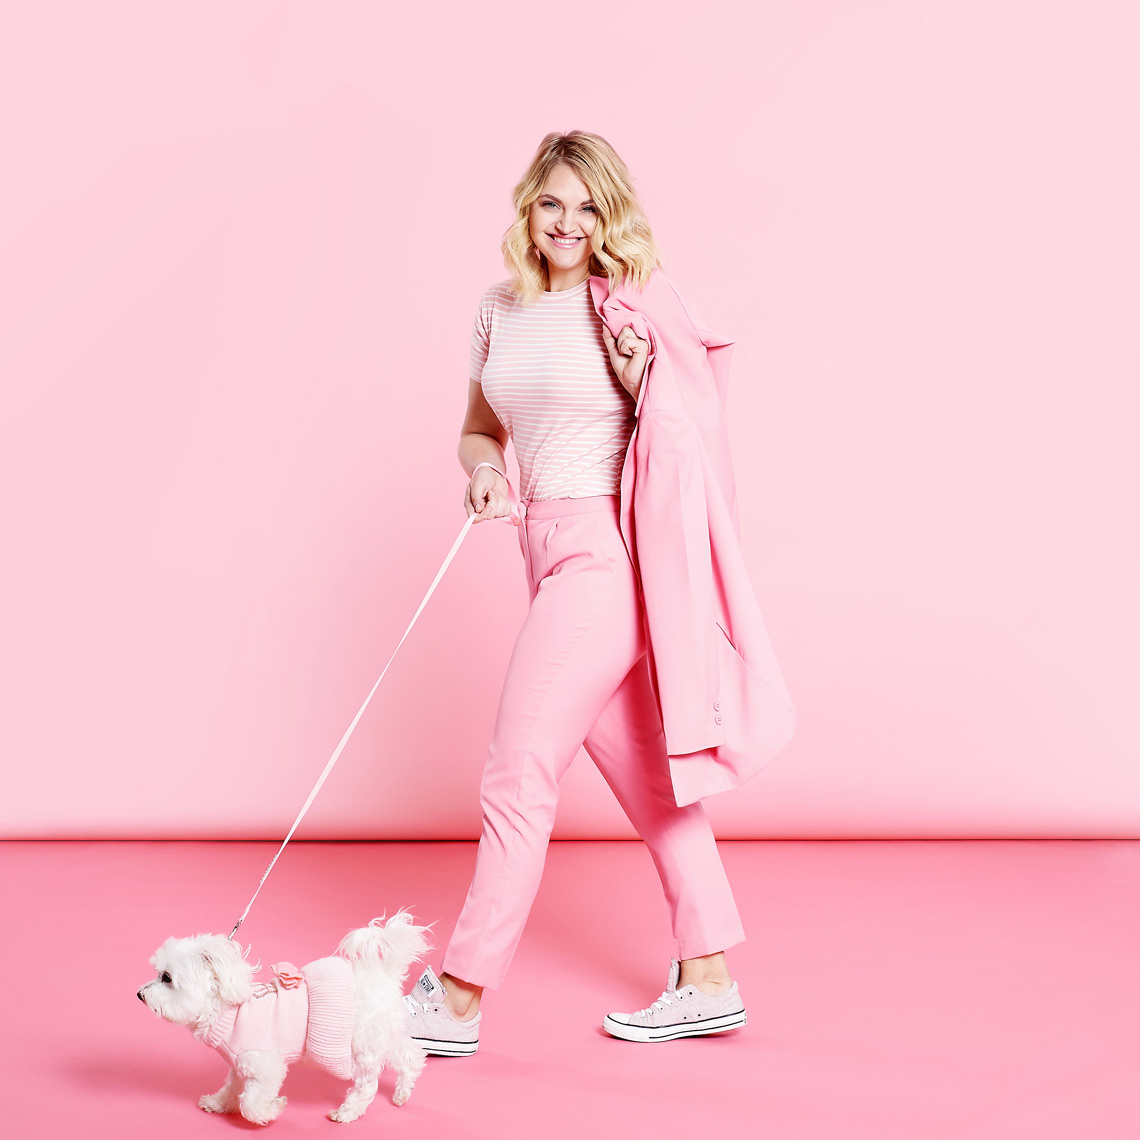 petsumer_dog_walking_lifestyle_on_pink